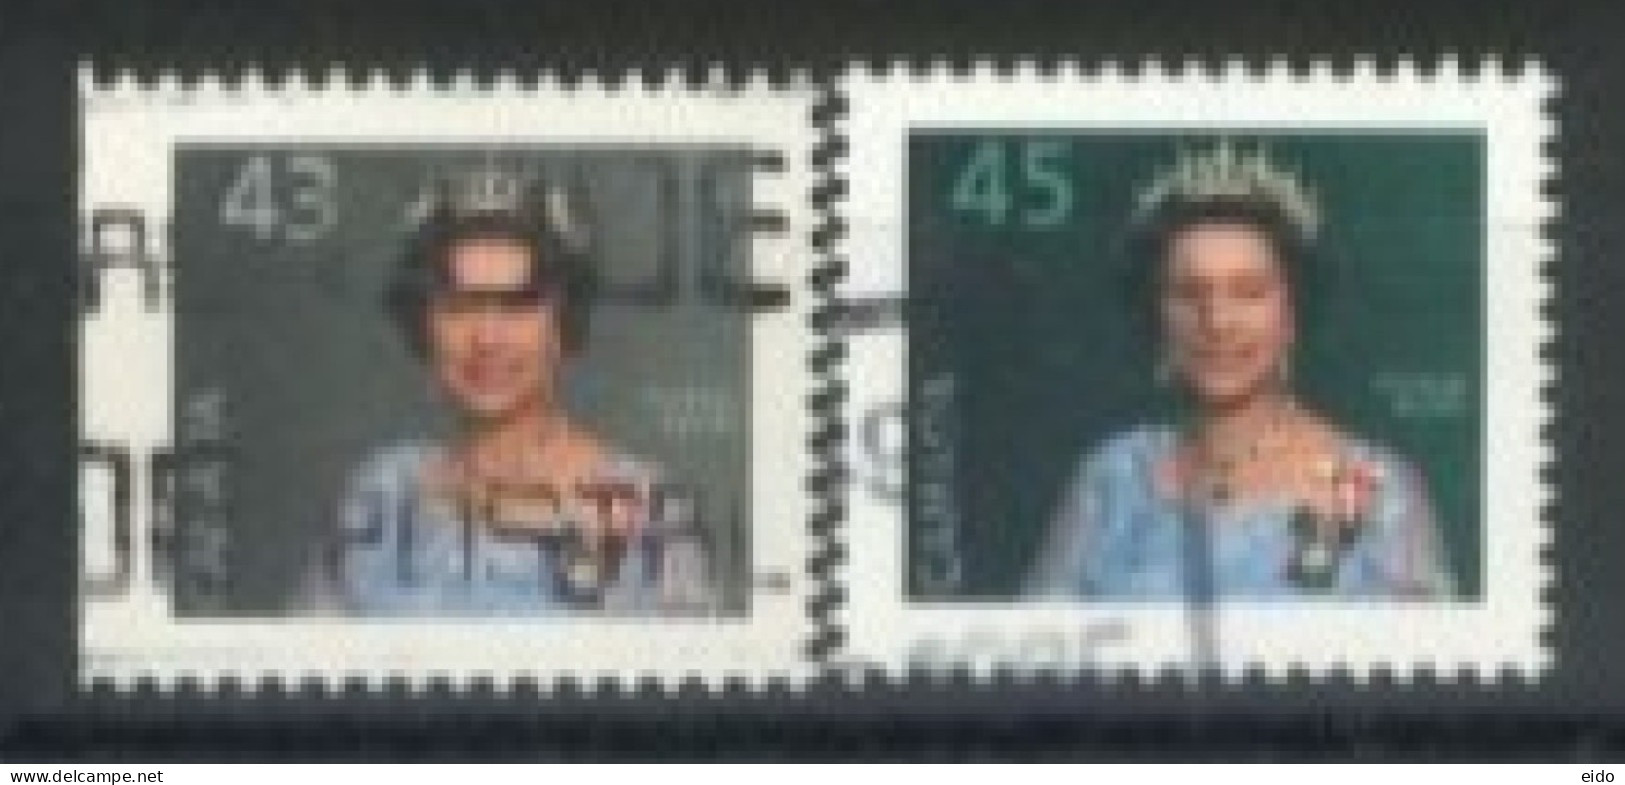 CANADA - 1985, QUEEN ELIZABETH II STAMPS SET OF 2, USED. - Gebraucht